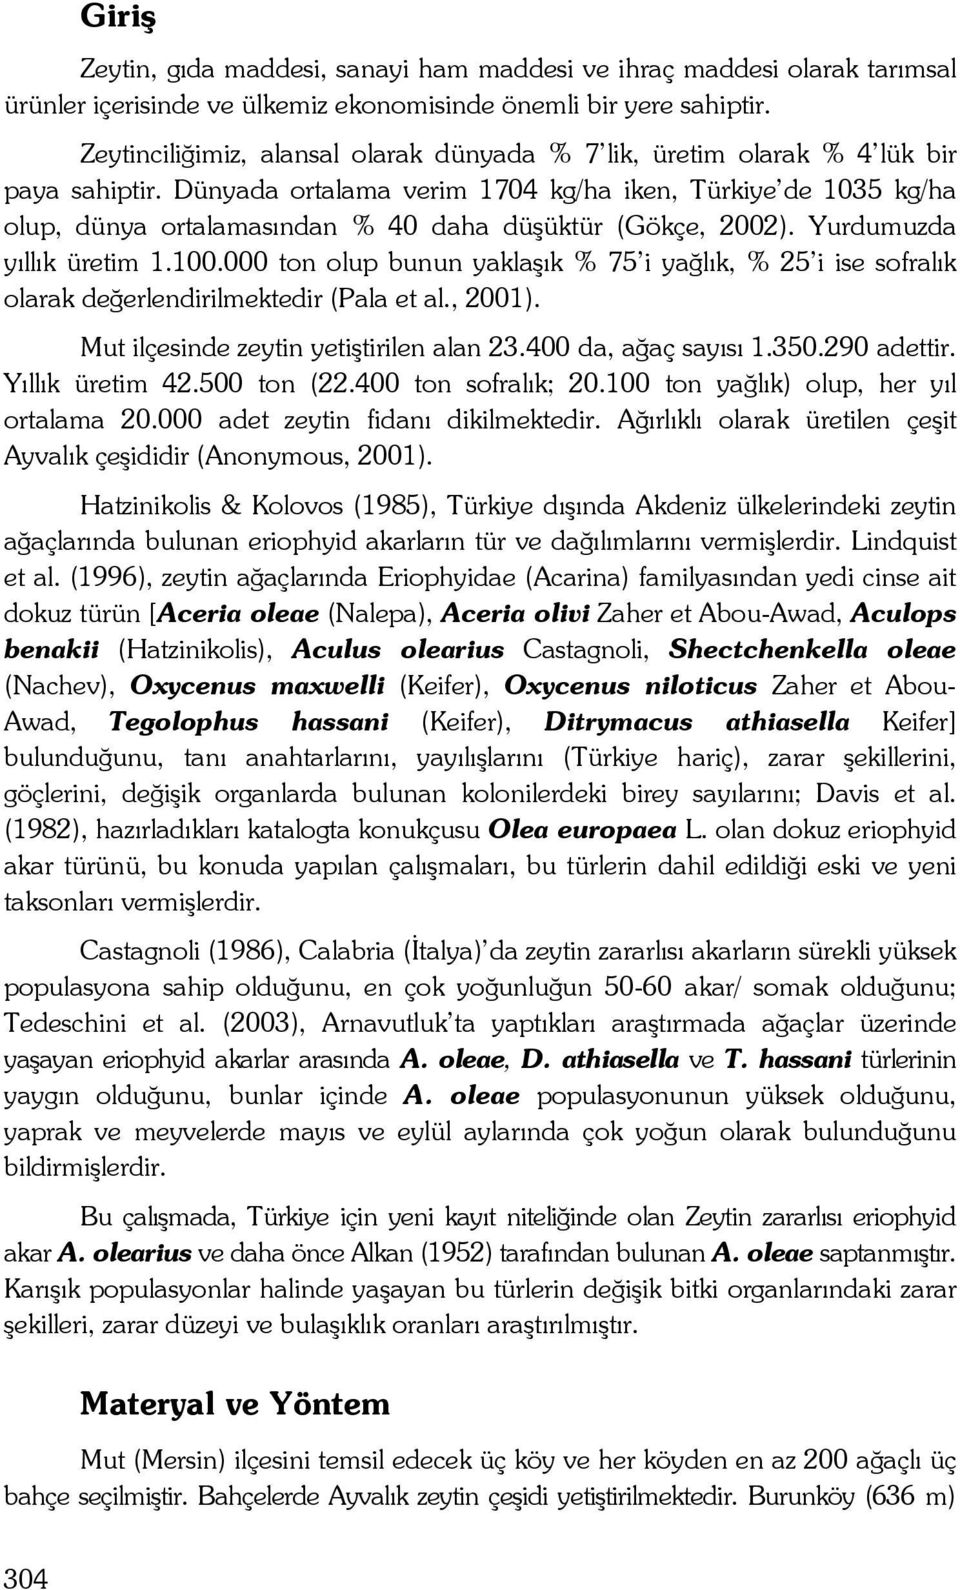 Dünyada ortalama verim 1704 kg/ha iken, Türkiye de 1035 kg/ha olup, dünya ortalamasından % 40 daha düşüktür (Gökçe, 2002). Yurdumuzda yıllık üretim 1.100.